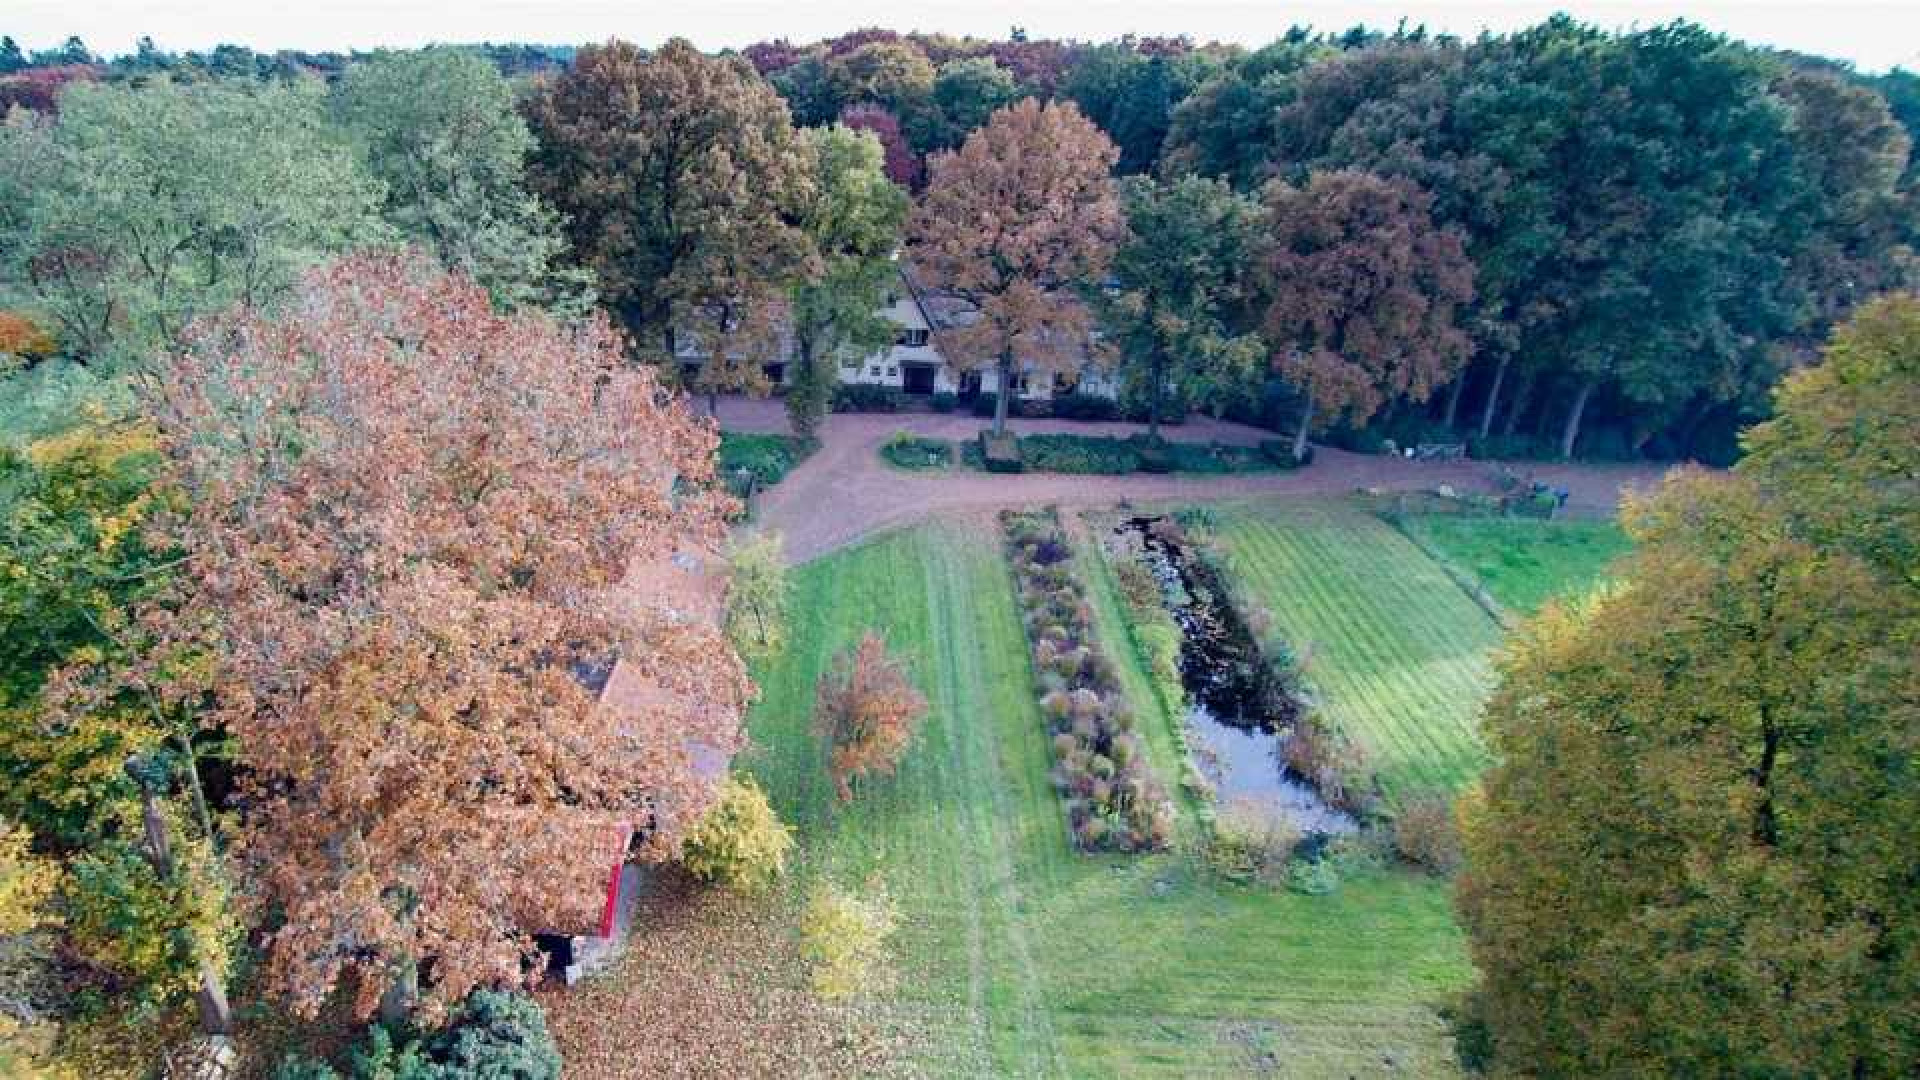 Oud PvdA coryfee Marcel van Dam zet zijn miljoenen landhuis te koop. Zie foto's